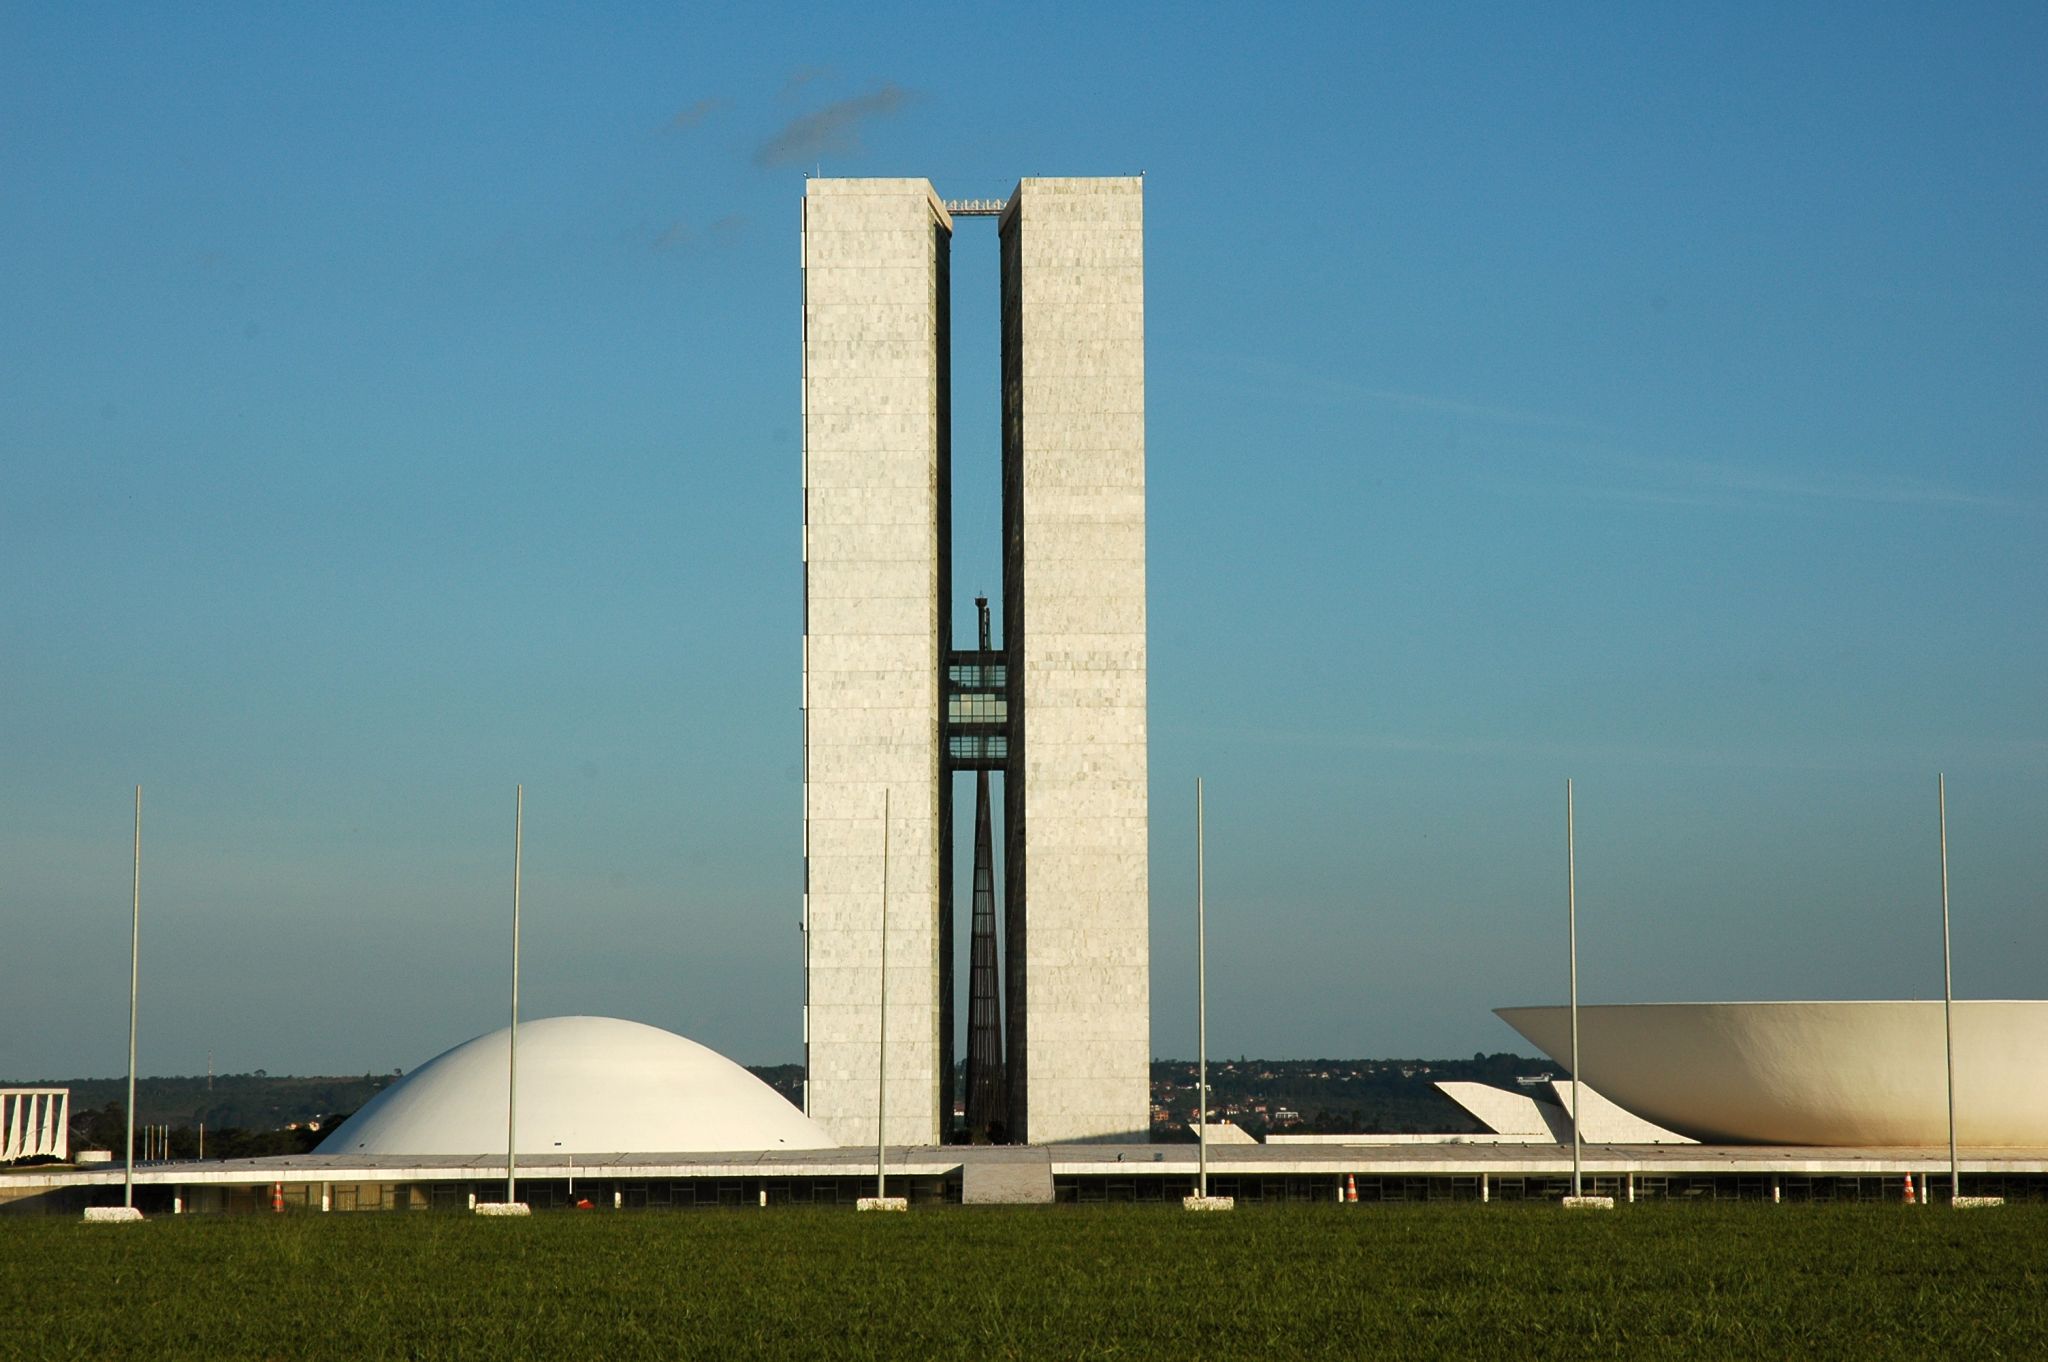 le Congrès national du Brésil à Brasília, bâtiment futuriste dessiné par O. Niemeyer